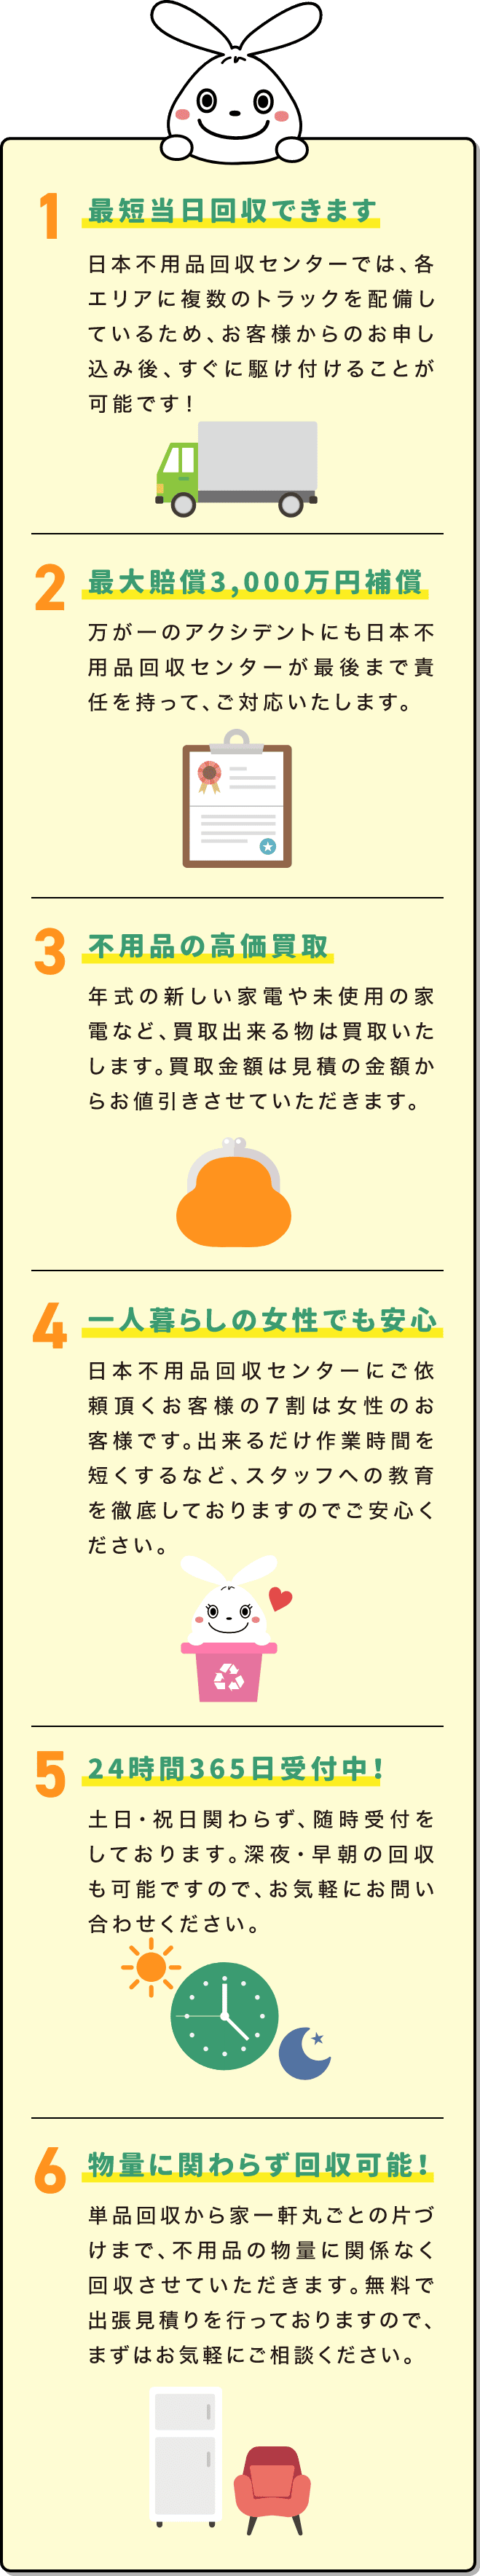 日本不用品回収センターの強みの詳細説明